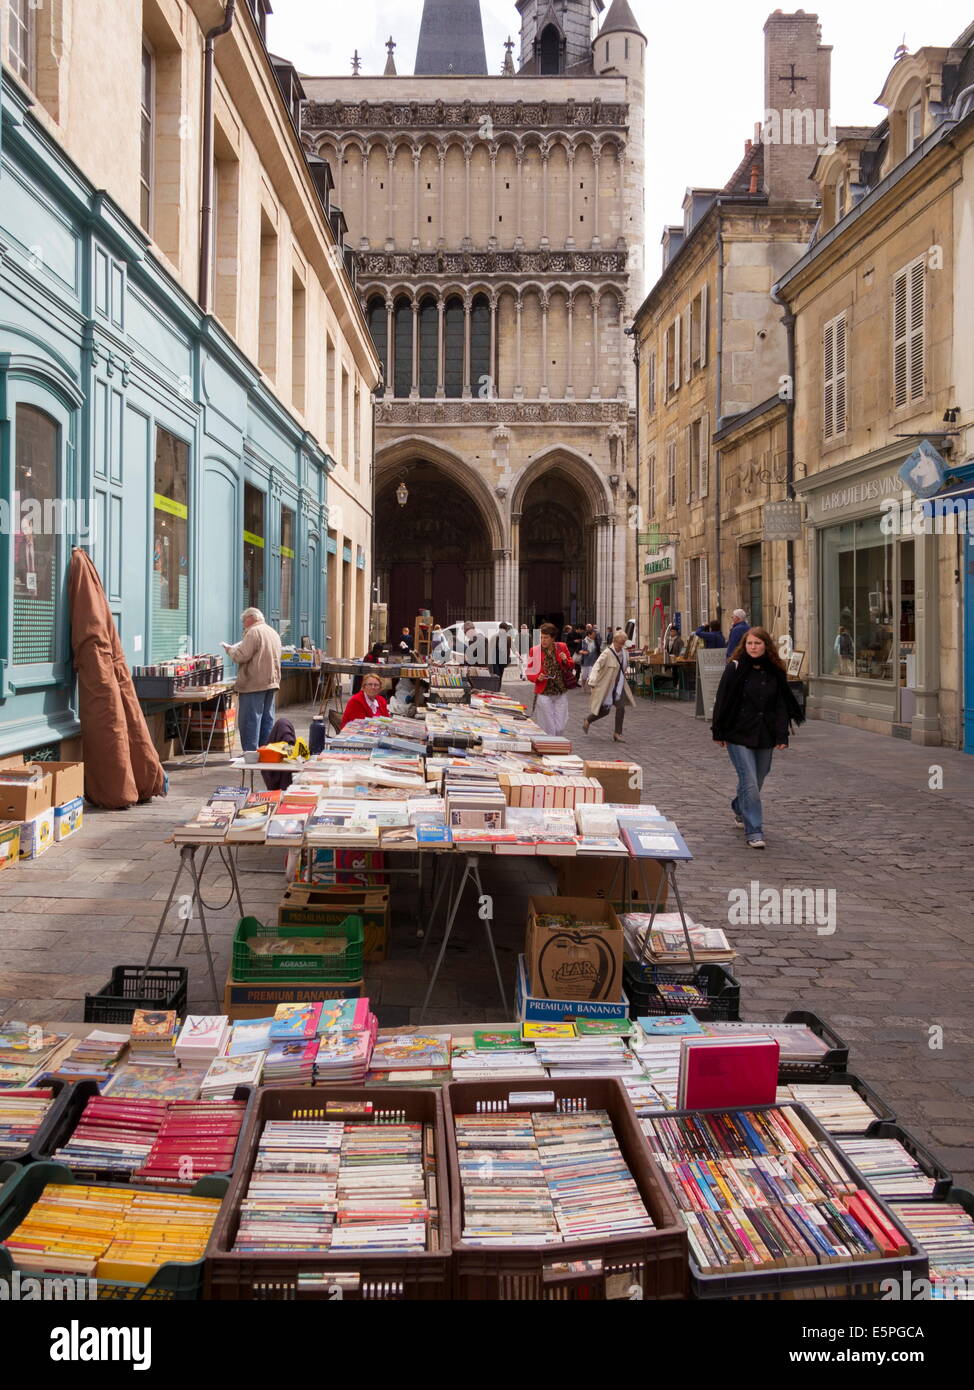 Les étals des libraires dans le musette et l'église de Notre-Dame, Dijon, Bourgogne, France, Europe Banque D'Images